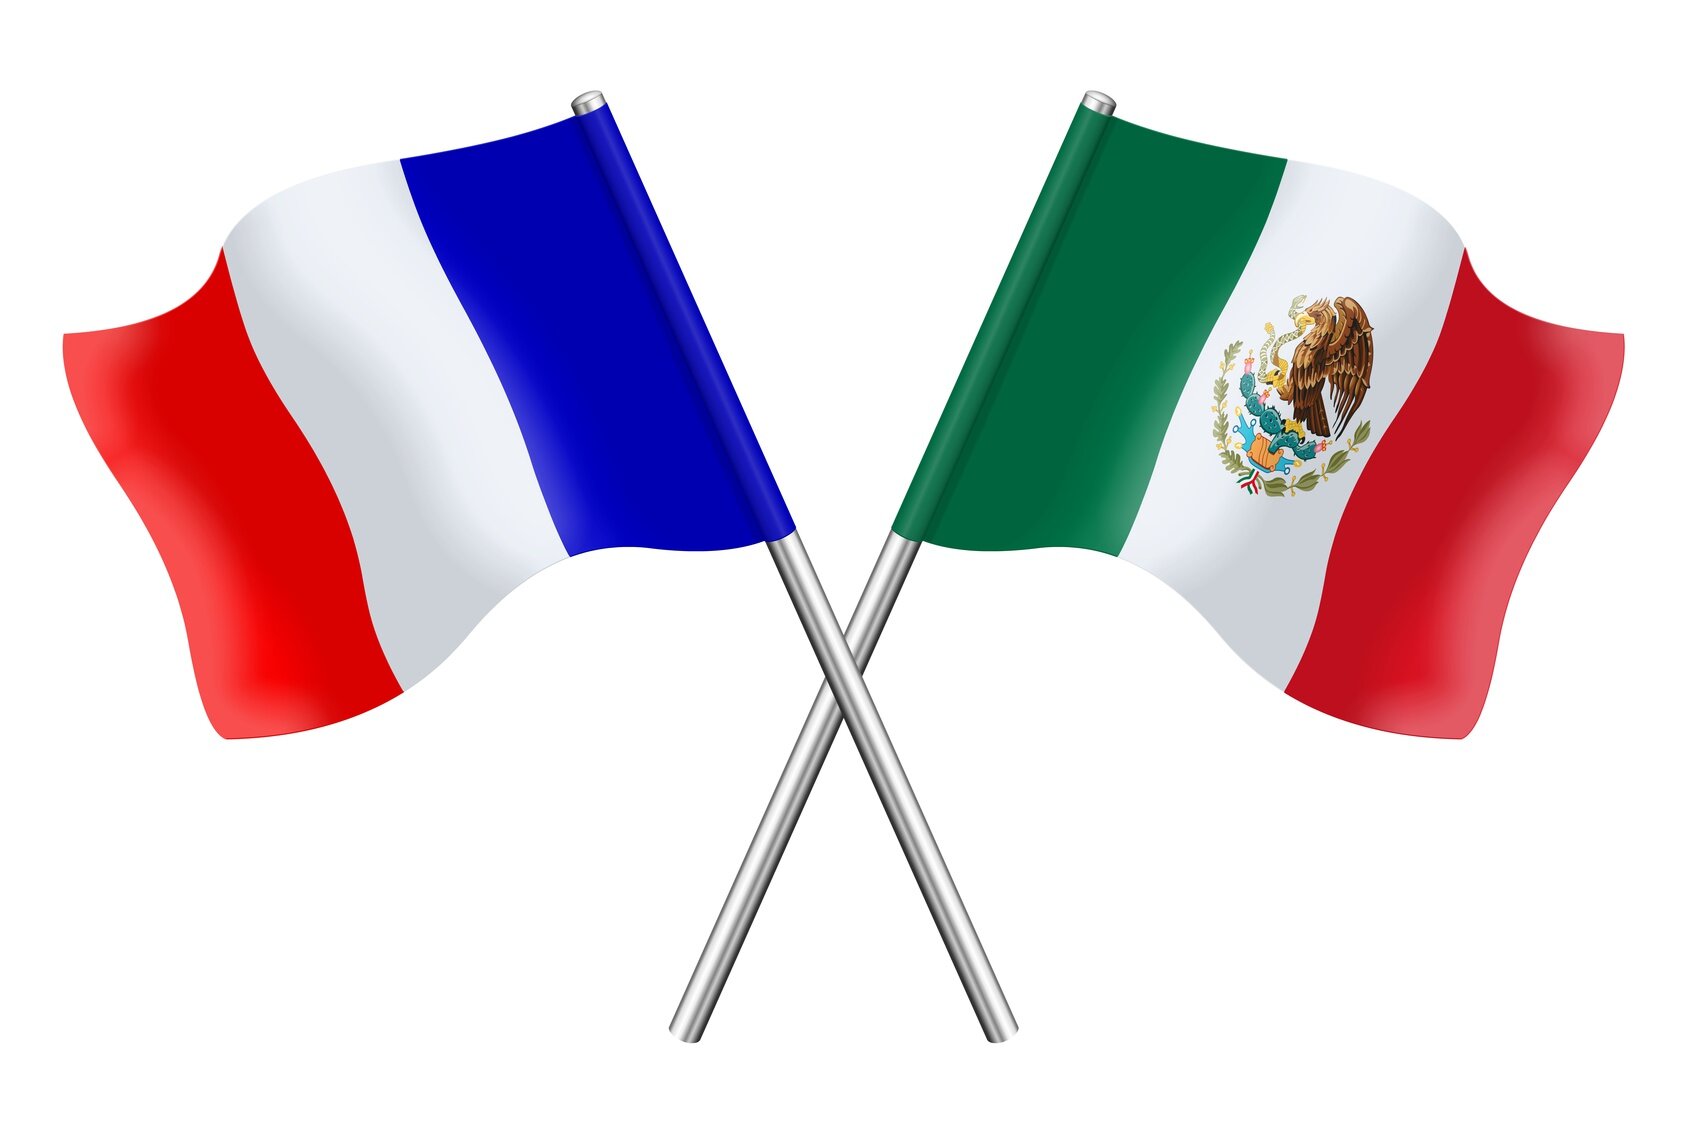 JOURNEE PAYS MEXIQUE - merc 22 juin 2016 à la CCI à Agen